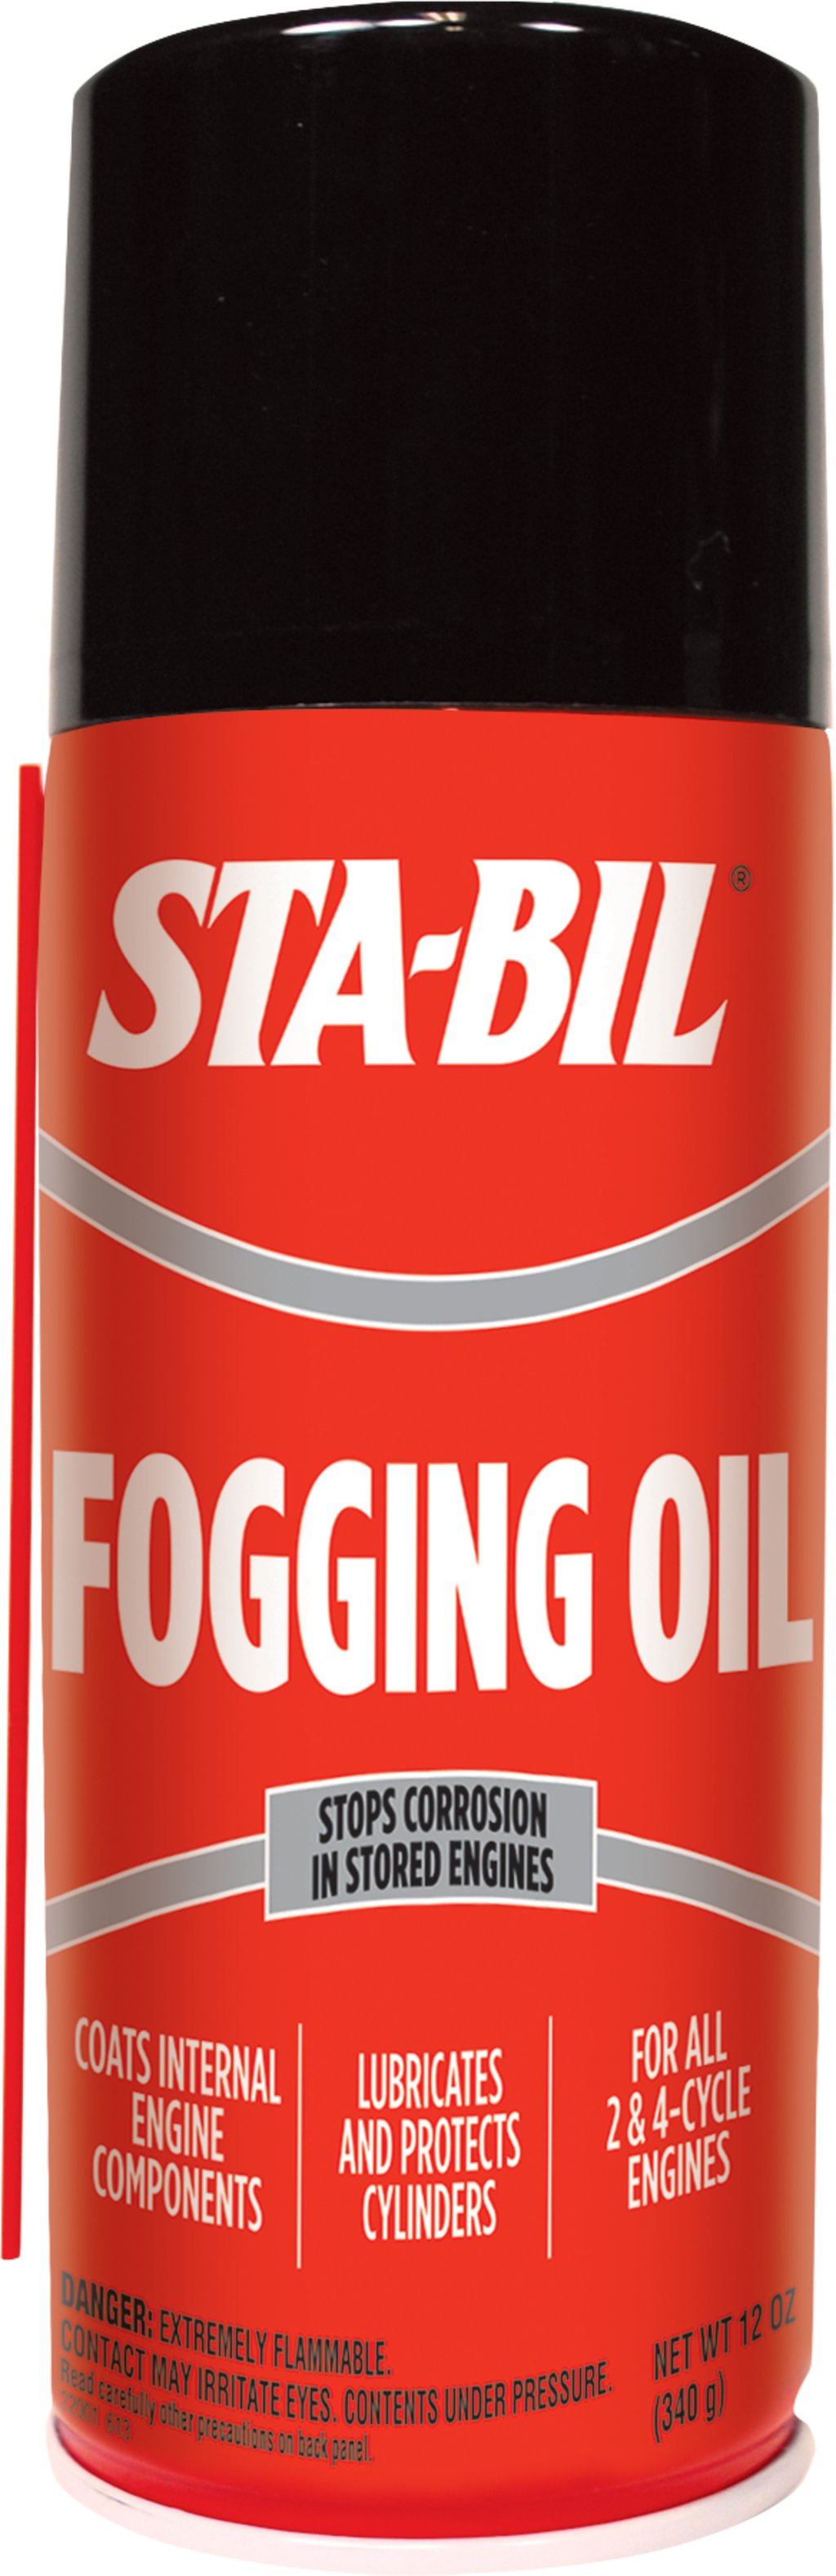 STA-BIL Fogging Oil